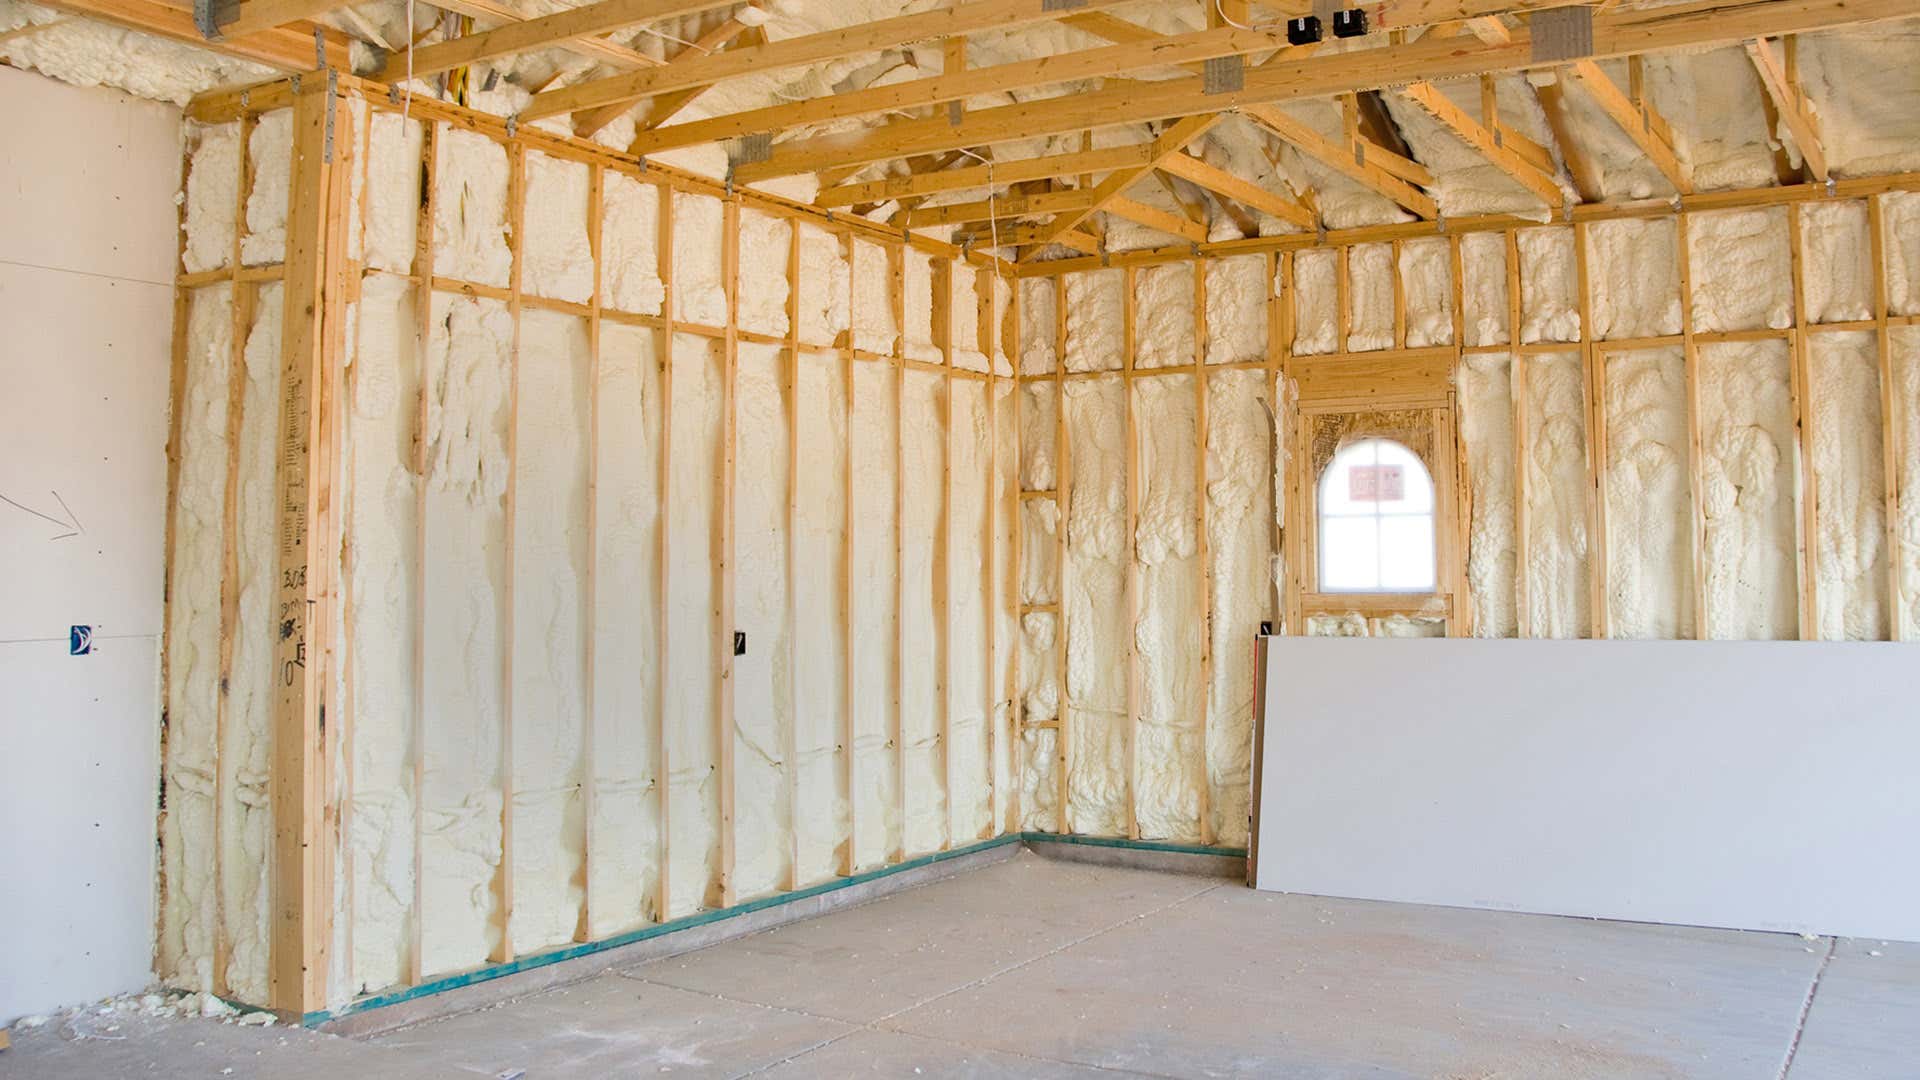 木质框架内的隔热层与车库中的混凝土地板形成对比。